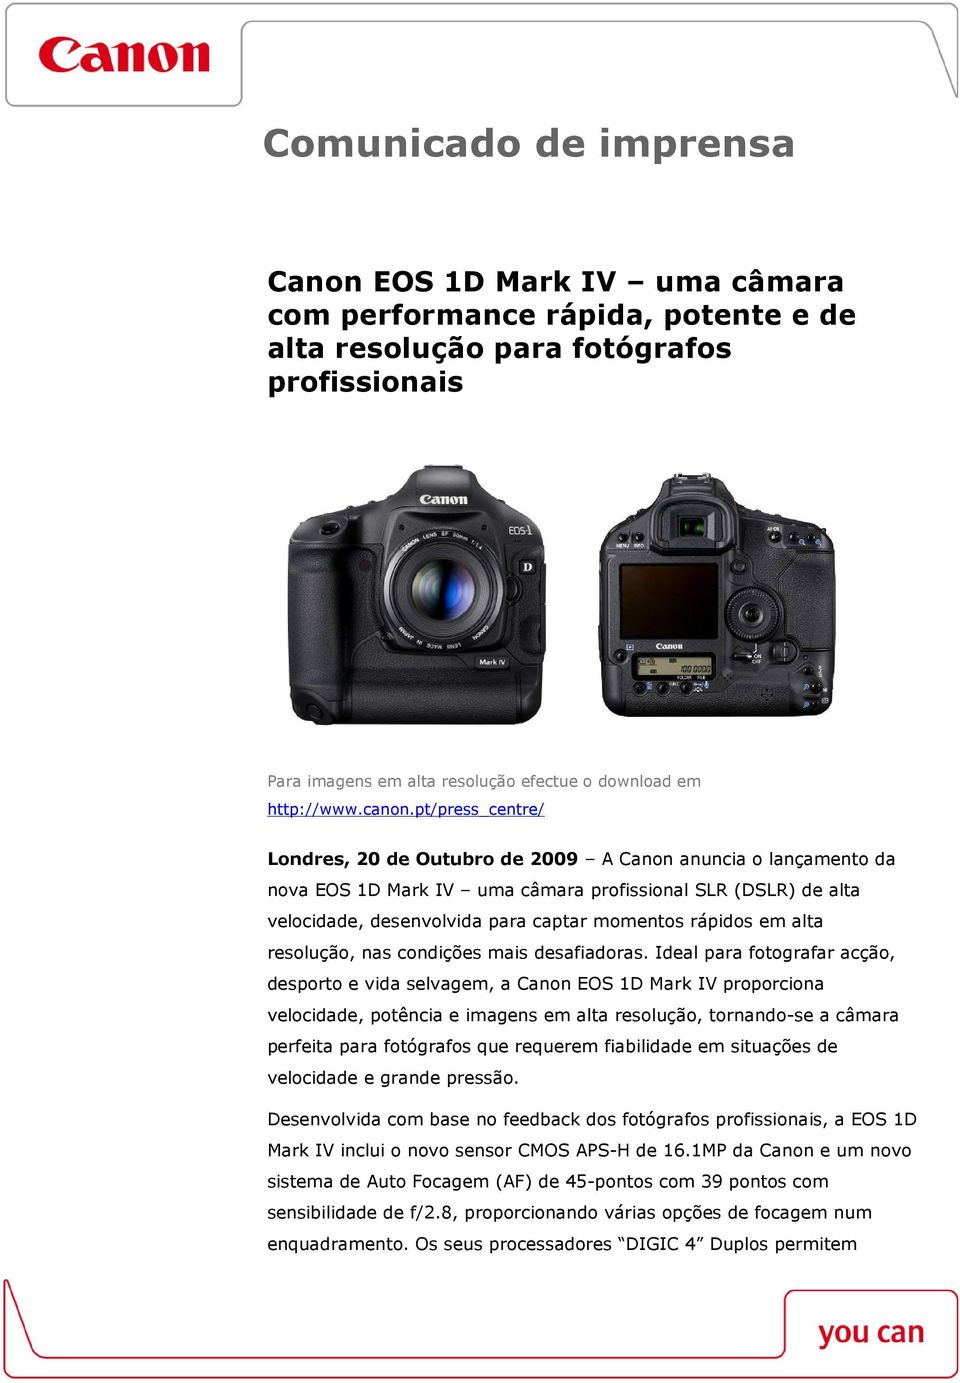 pt/press_centre/ Londres, 20 de Outubro de 2009 A Canon anuncia o lançamento da nova EOS 1D Mark IV uma câmara profissional SLR (DSLR) de alta velocidade, desenvolvida para captar momentos rápidos em